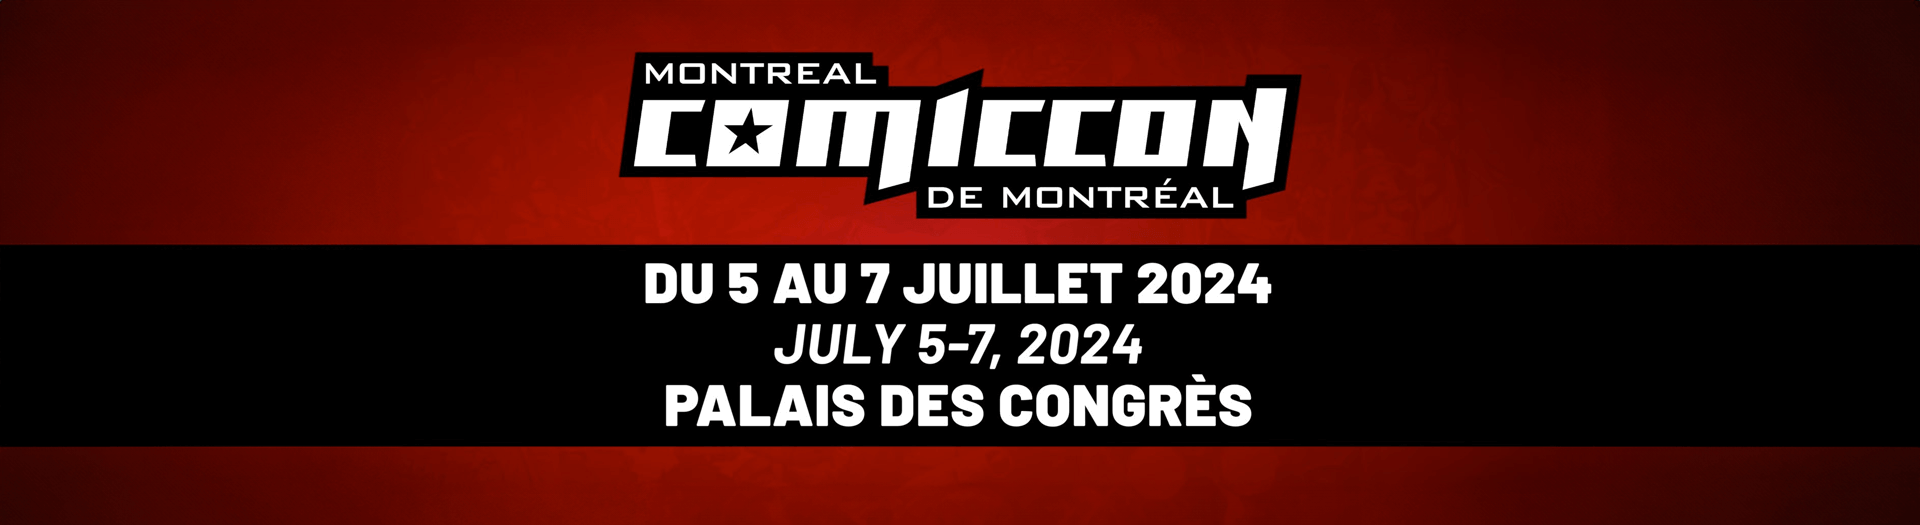 Montreal Comiccon, Palais des congrès de Montréal